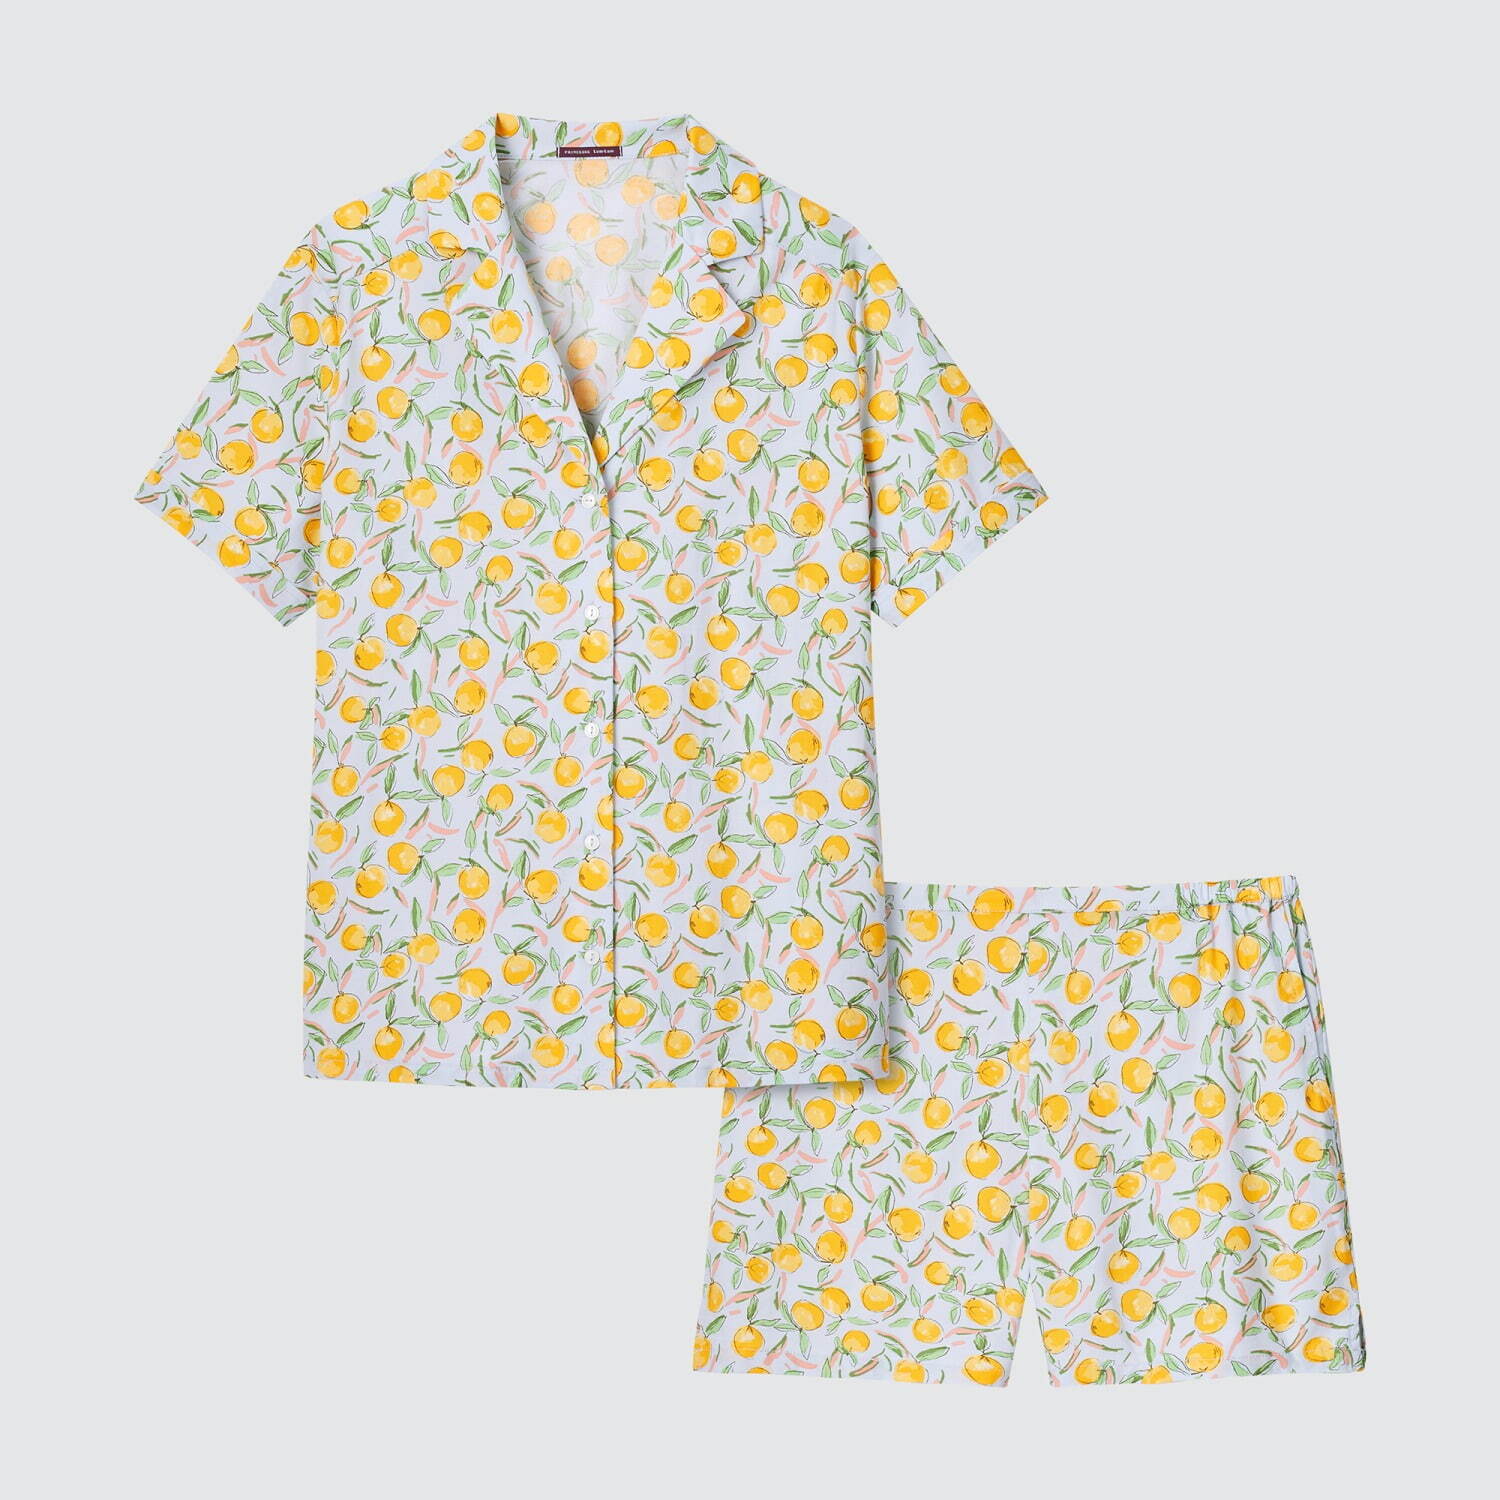 人気ブランドの夏用レディースルームウェア 22 ユニクロやジェラート ピケの涼しいパジャマ ファッションプレス